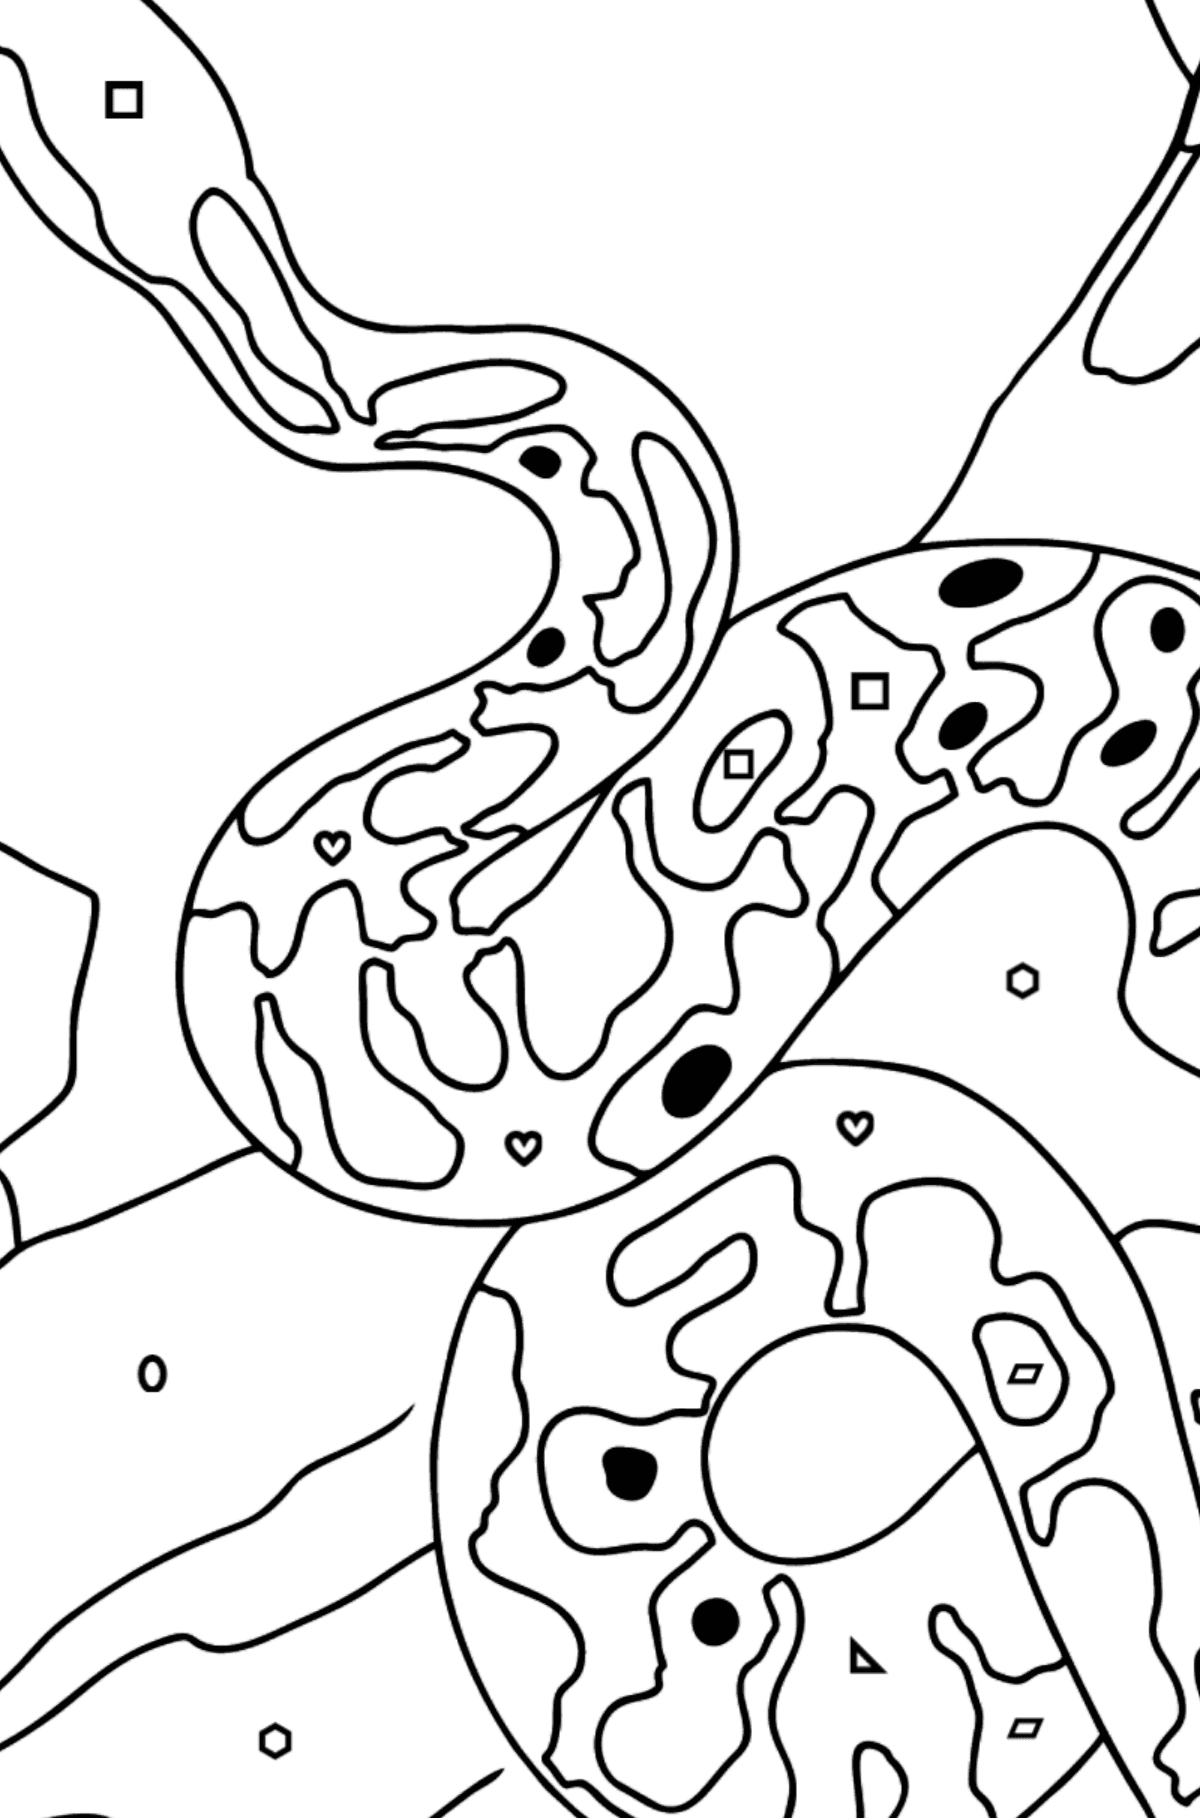 Disegno di Serpente da colorare - Colorare per forme geometriche per bambini